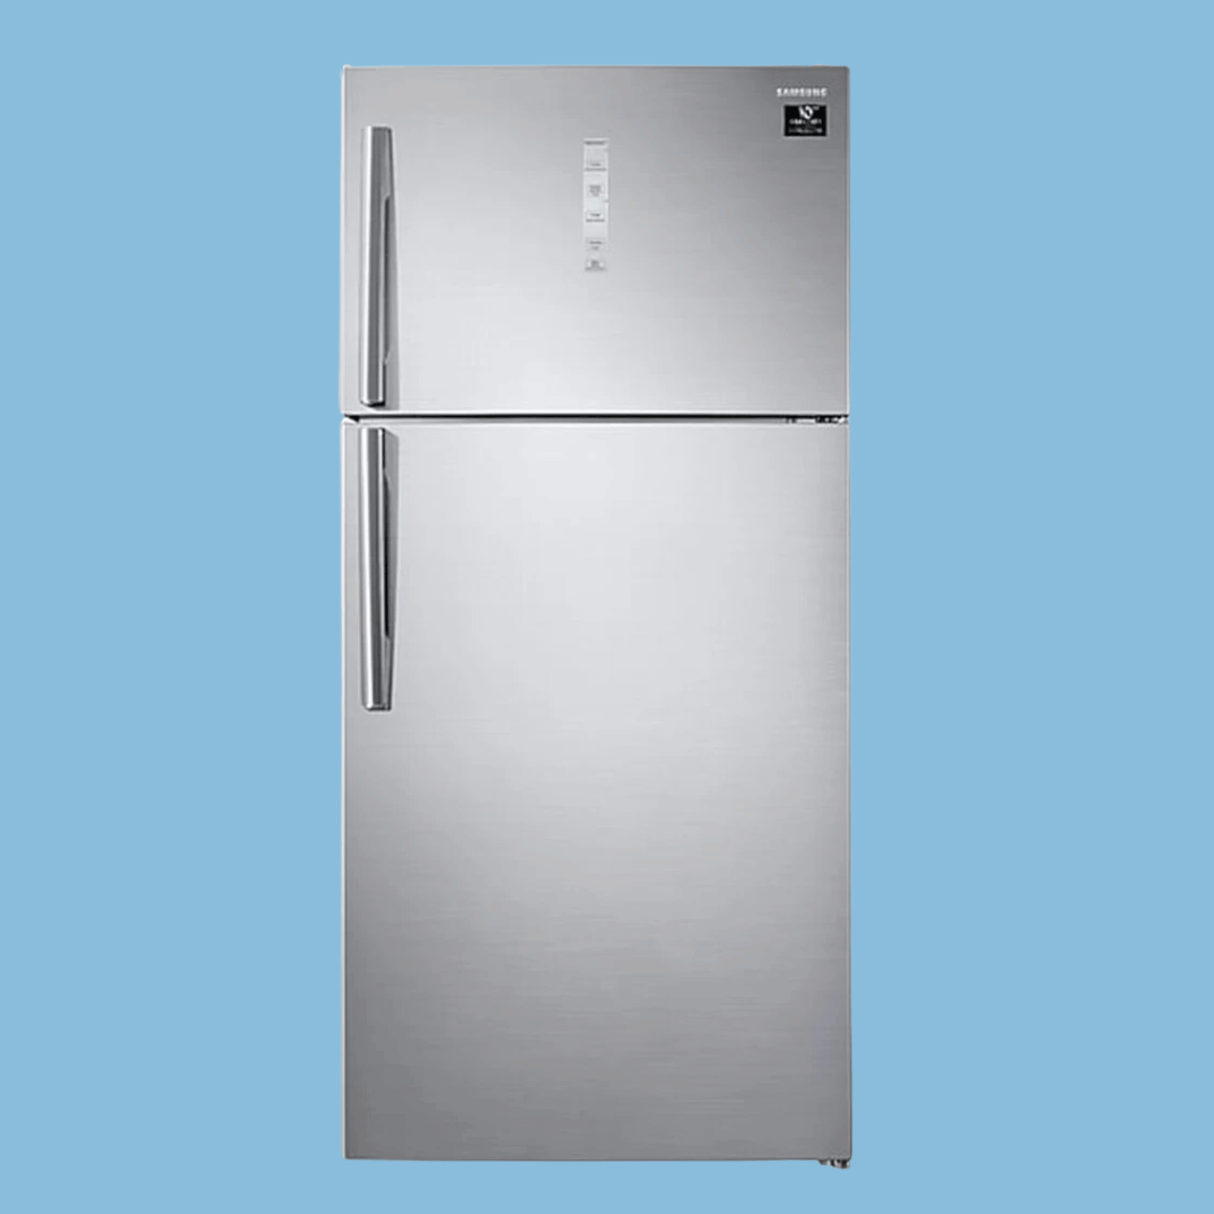 Samsung 600L Fridge RT60 K6341SL; Double Door Frost Free Refrigerator | Twin Cooling |Top Mount Freezer – Inox.